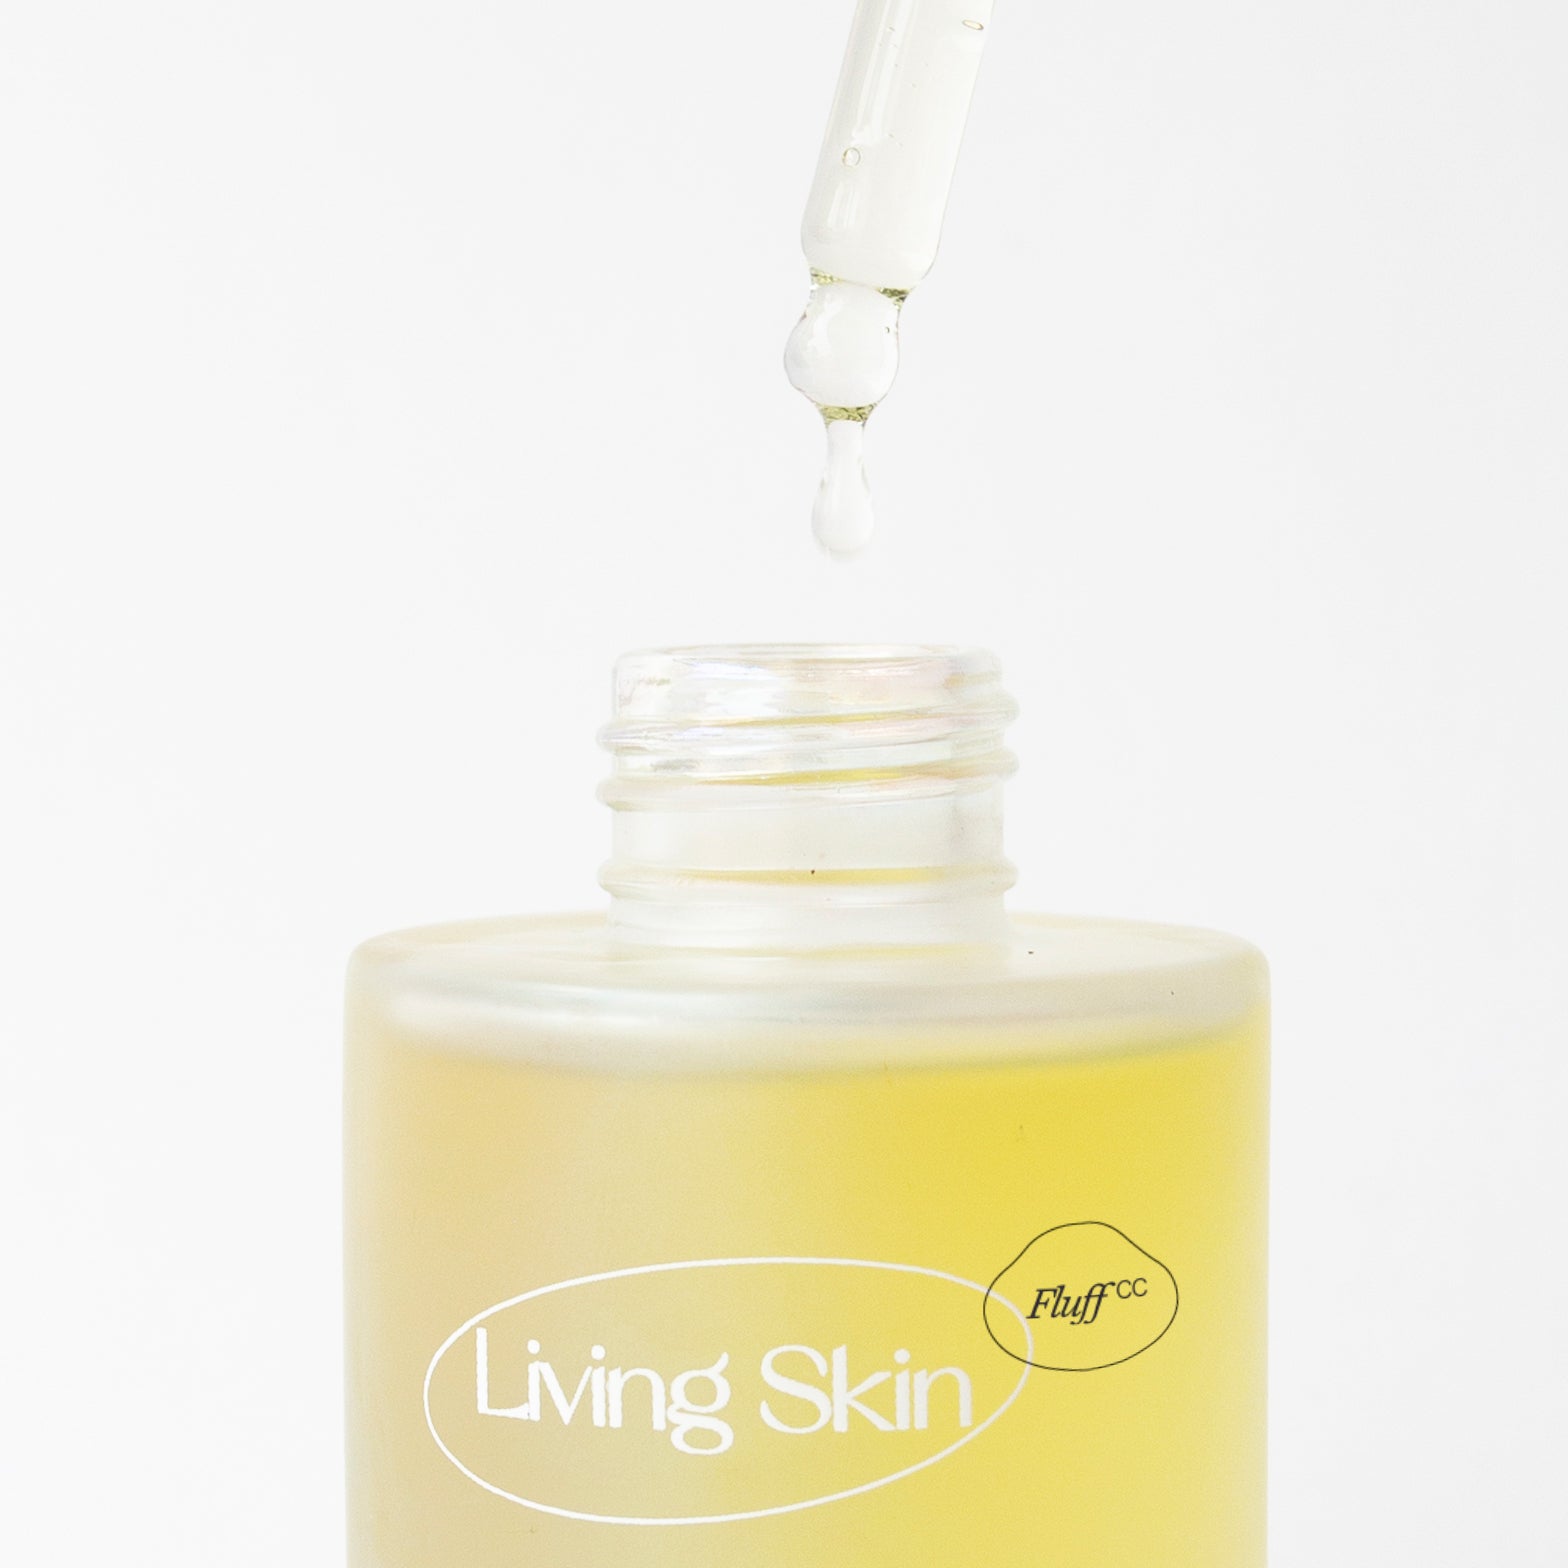 Fluff x Living Skin Restorative Oil Cleanser